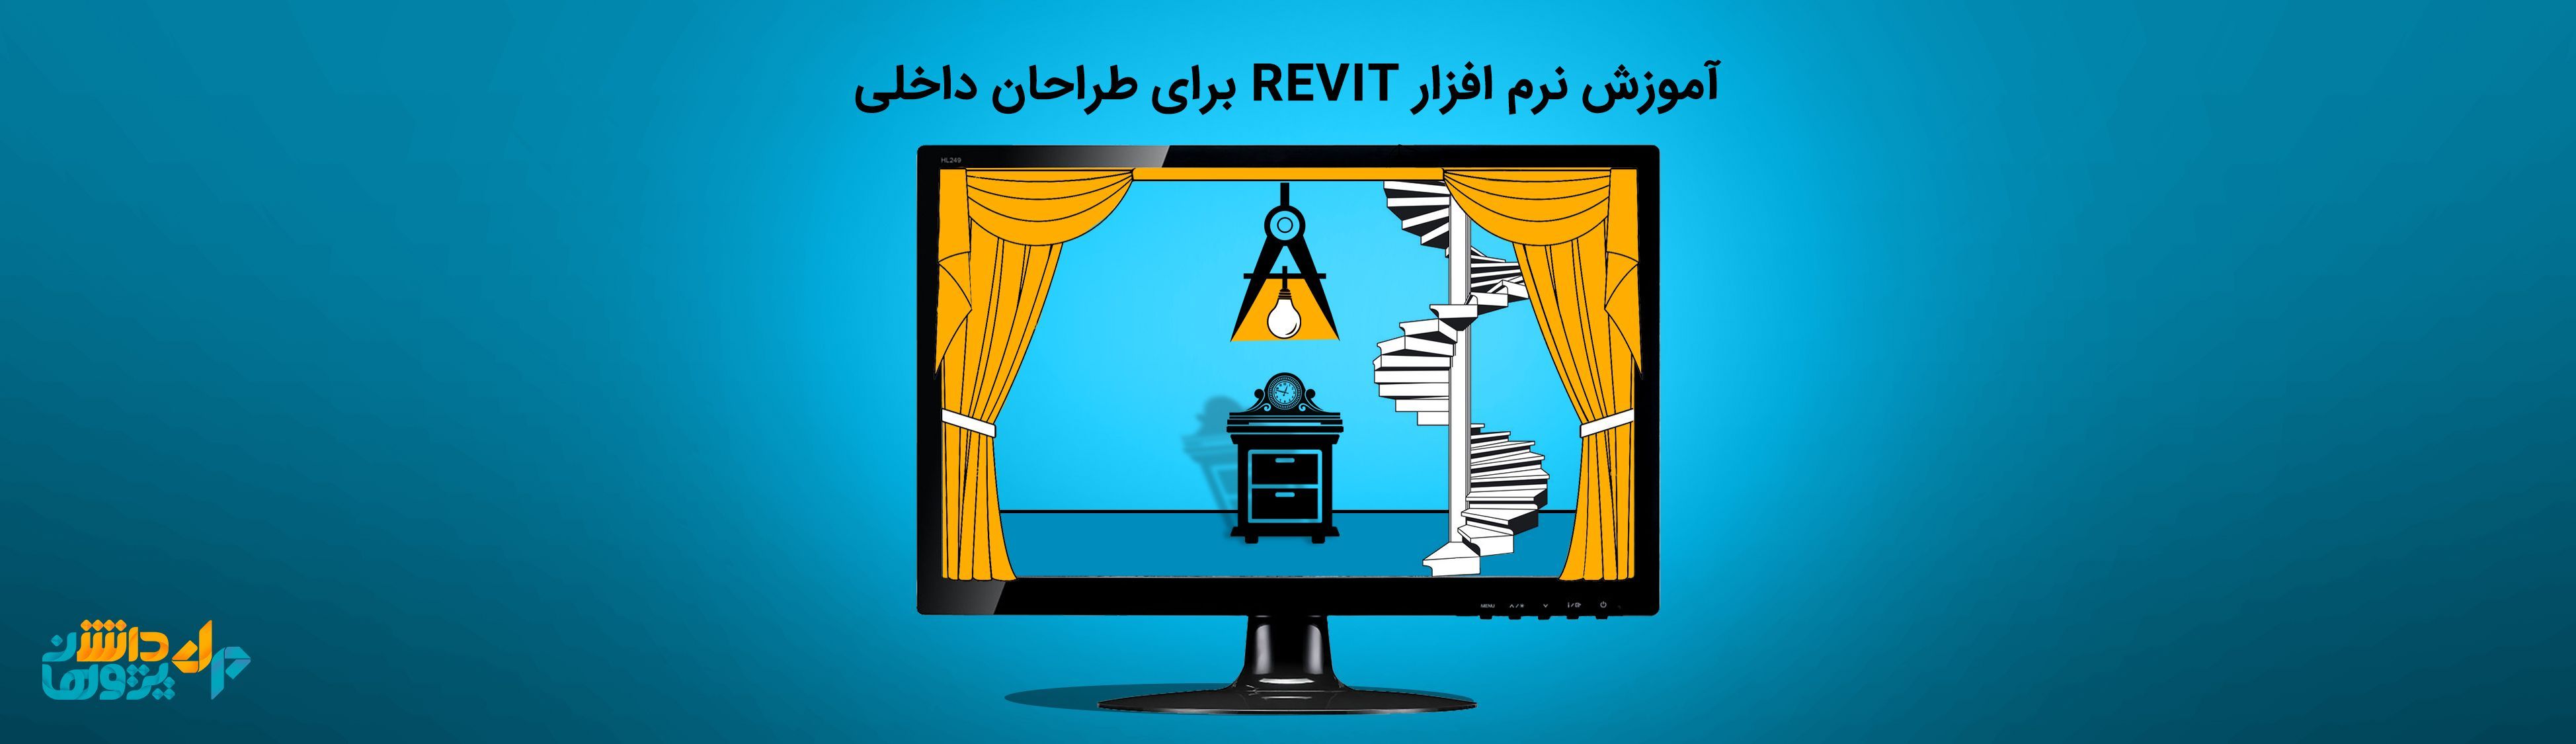 آموزش نرم افزار Revit برای طراحان داخلی (کلاس آنلاین)